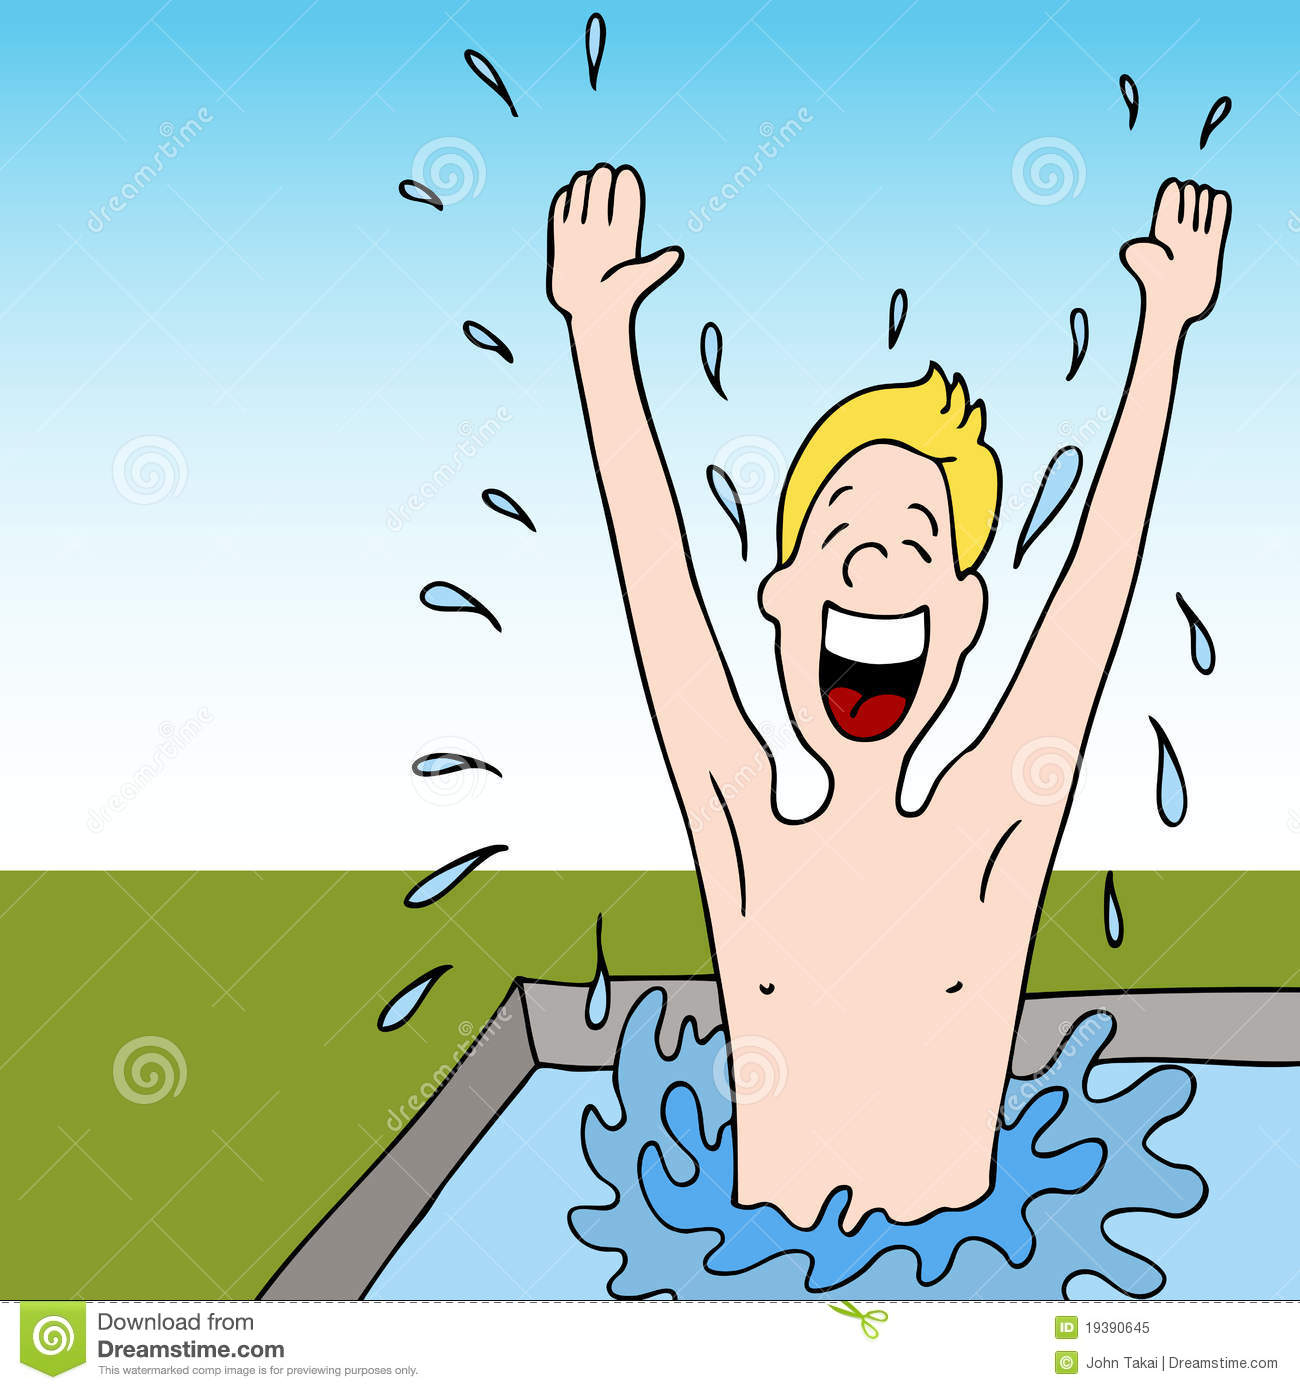 Man Splashing Water In Swimming Pool Royalty Free Stock Photo   Image    